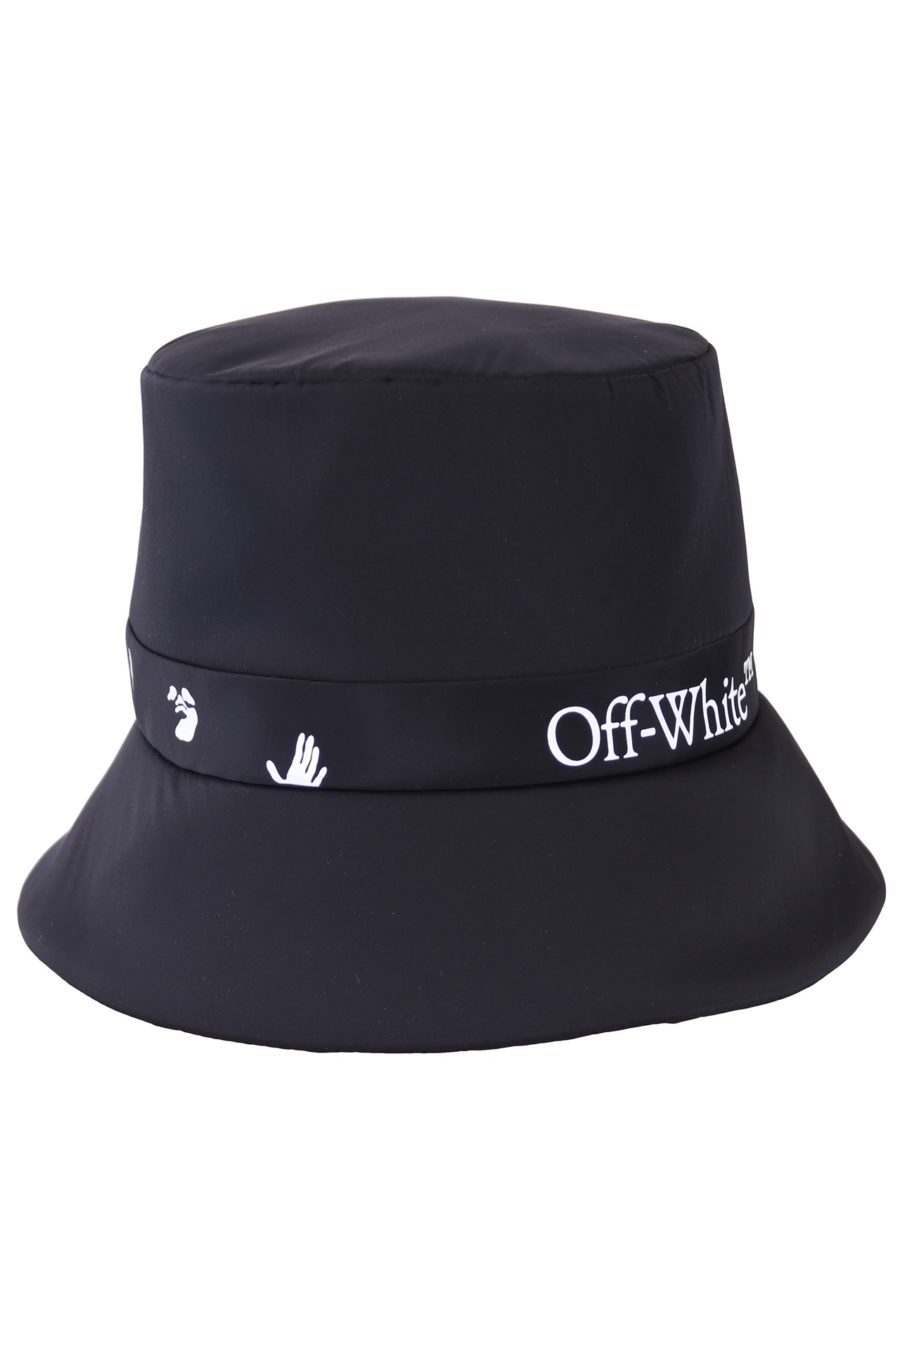 Sombrero Off-White negro con logo - 3e4e5bd08de53278088e9dba86e60552ed9036c8